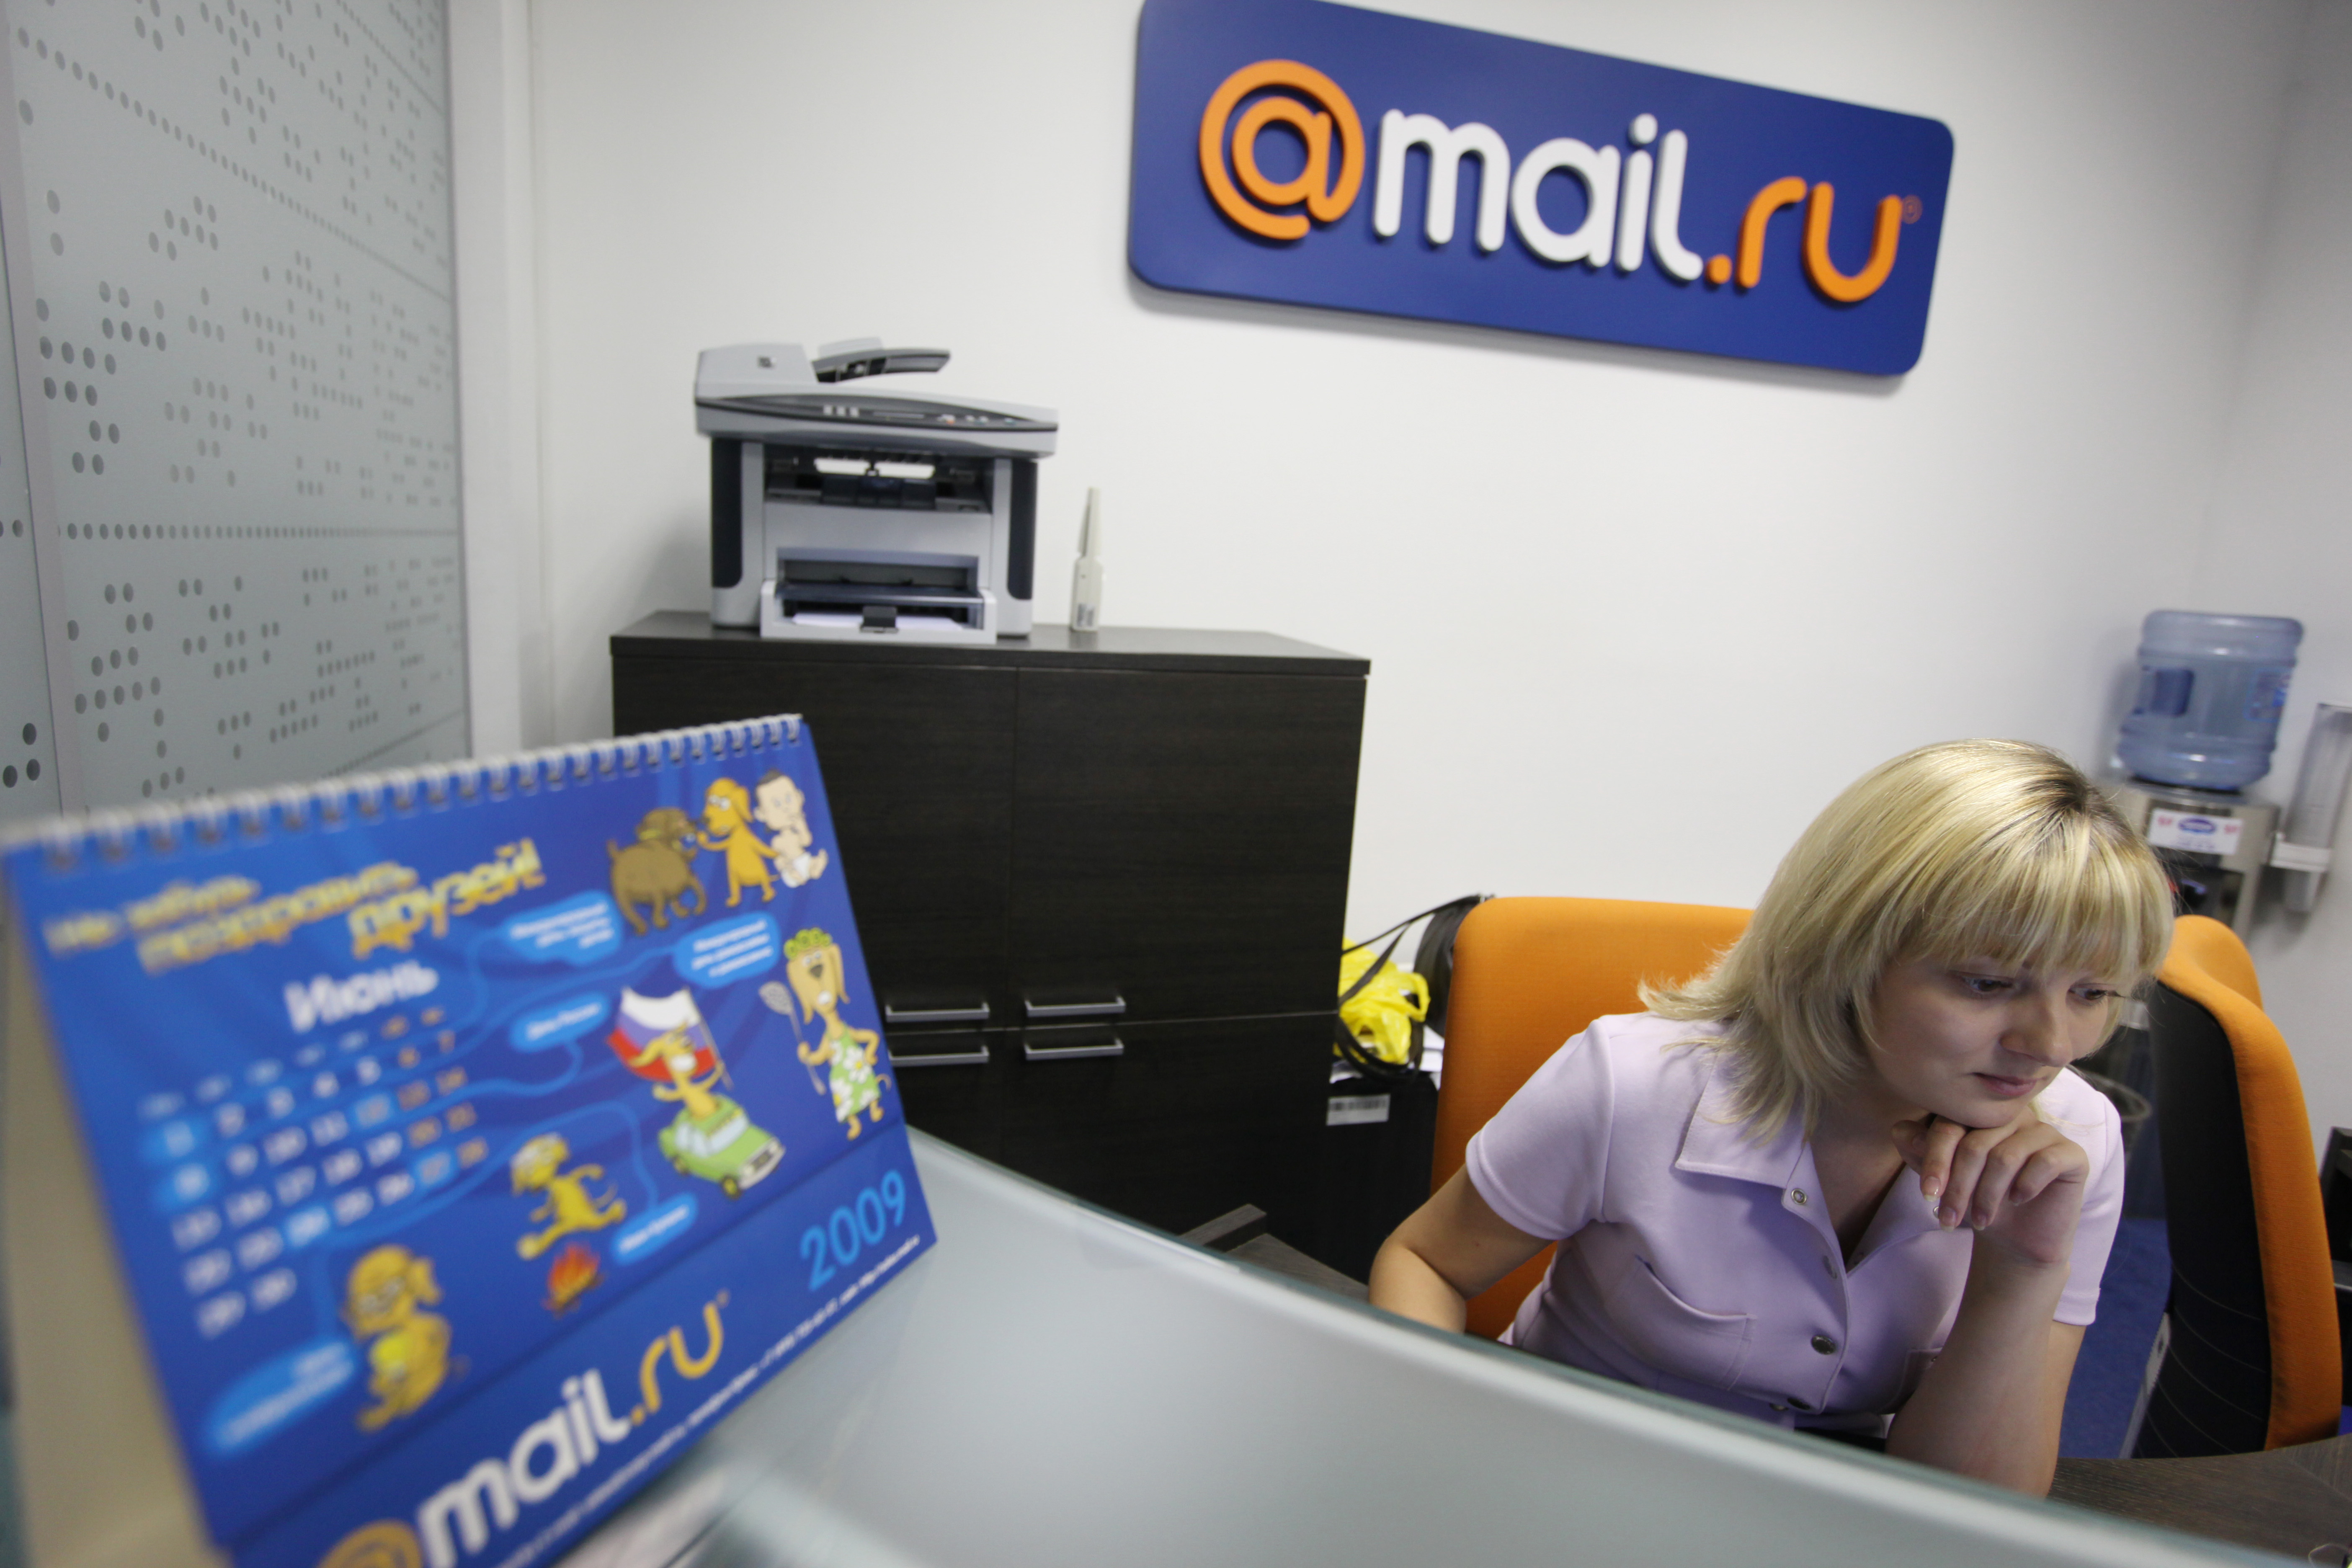 Https sharing mail ru. Майл фото. Фото для почты майл. Интернет почта.